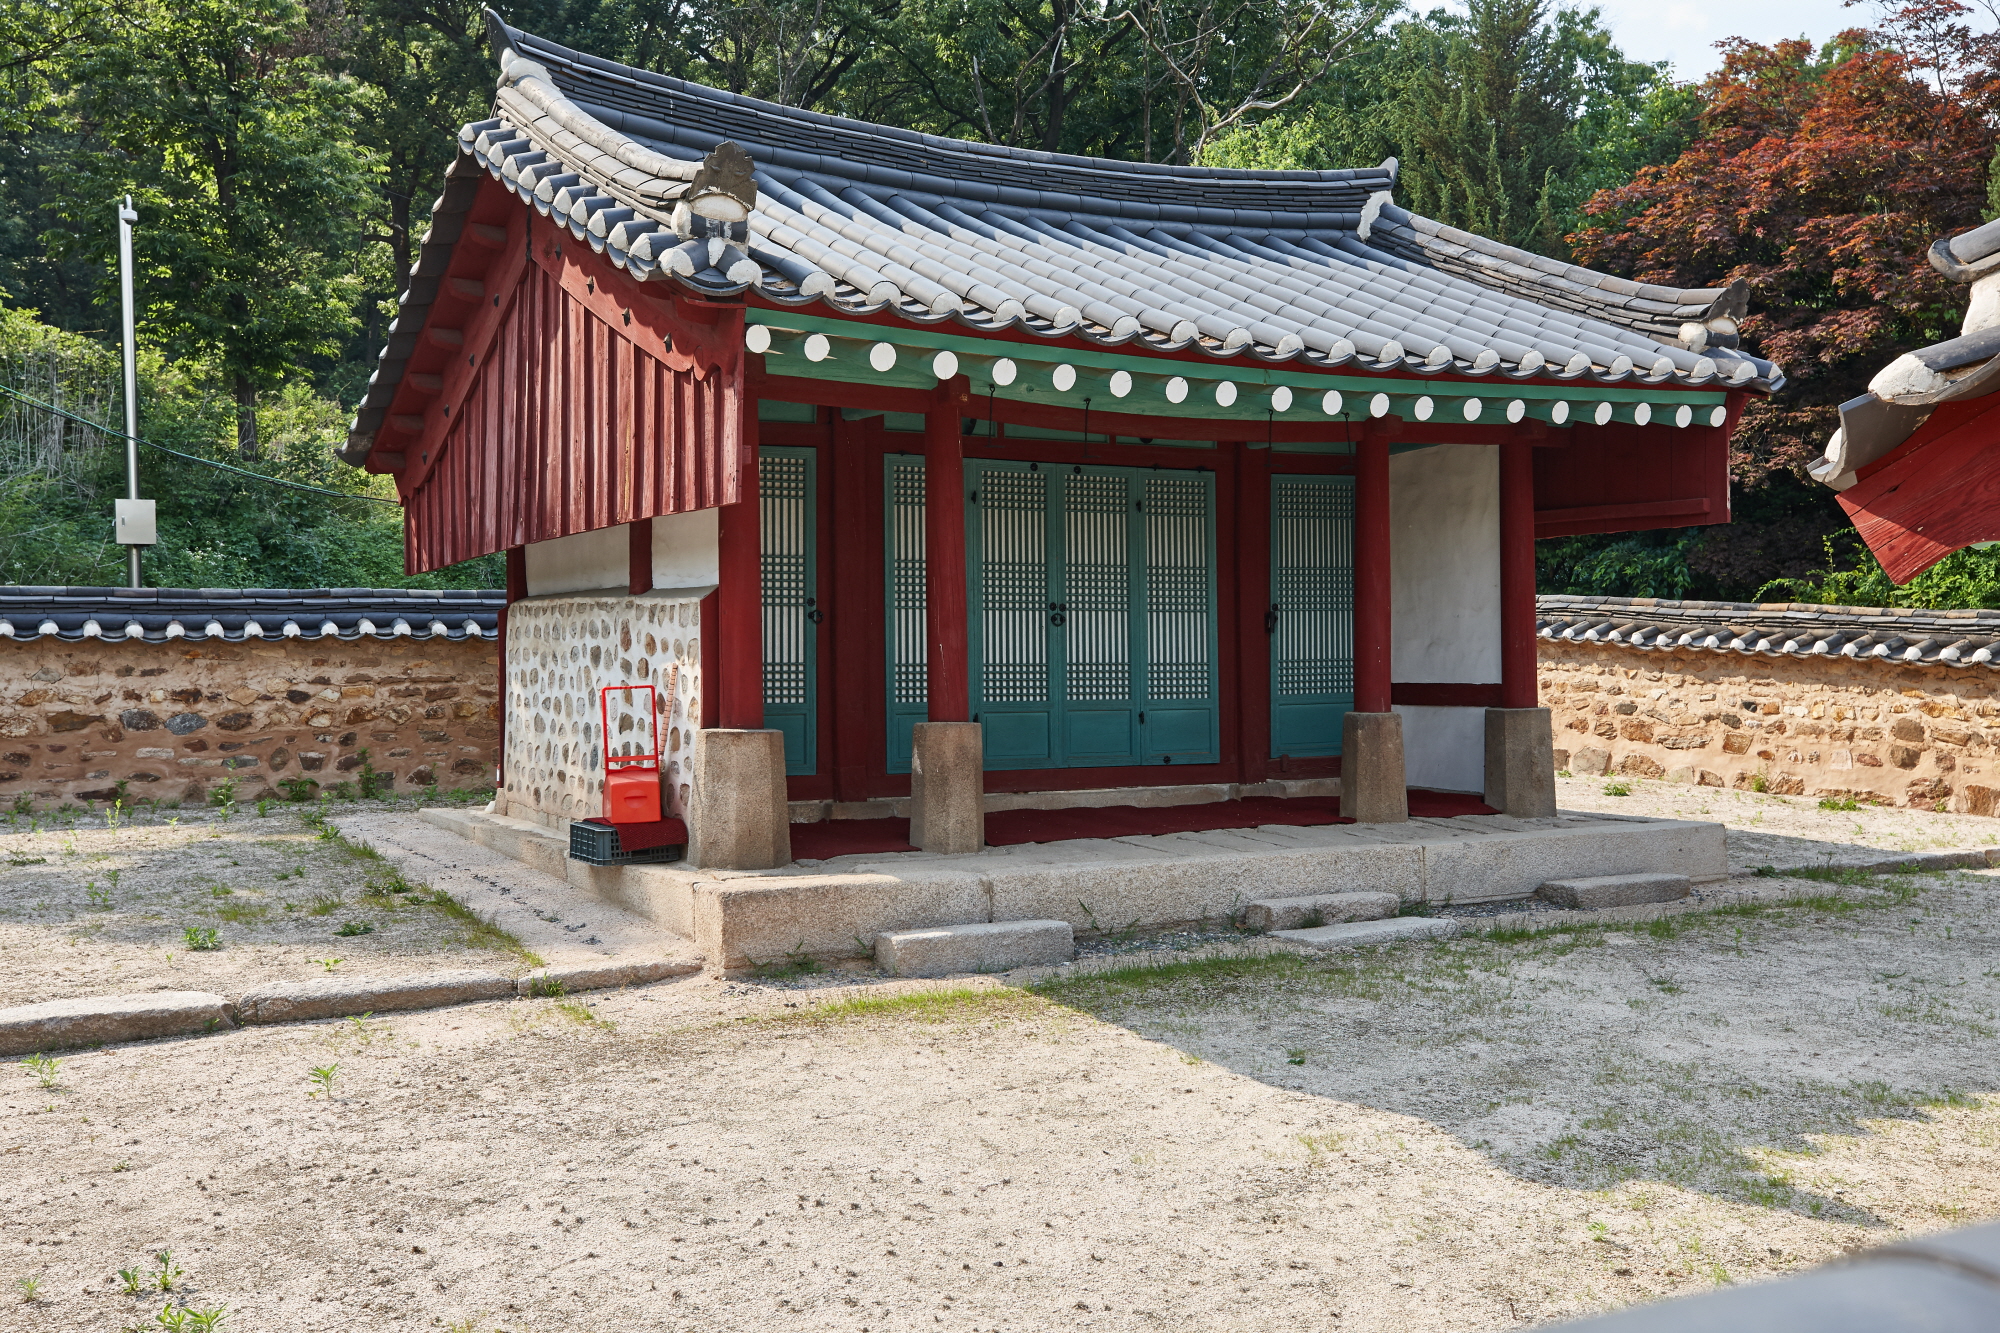 The oldest shrine cultural asset in Goyang-si, Wolsandaegun shrine 